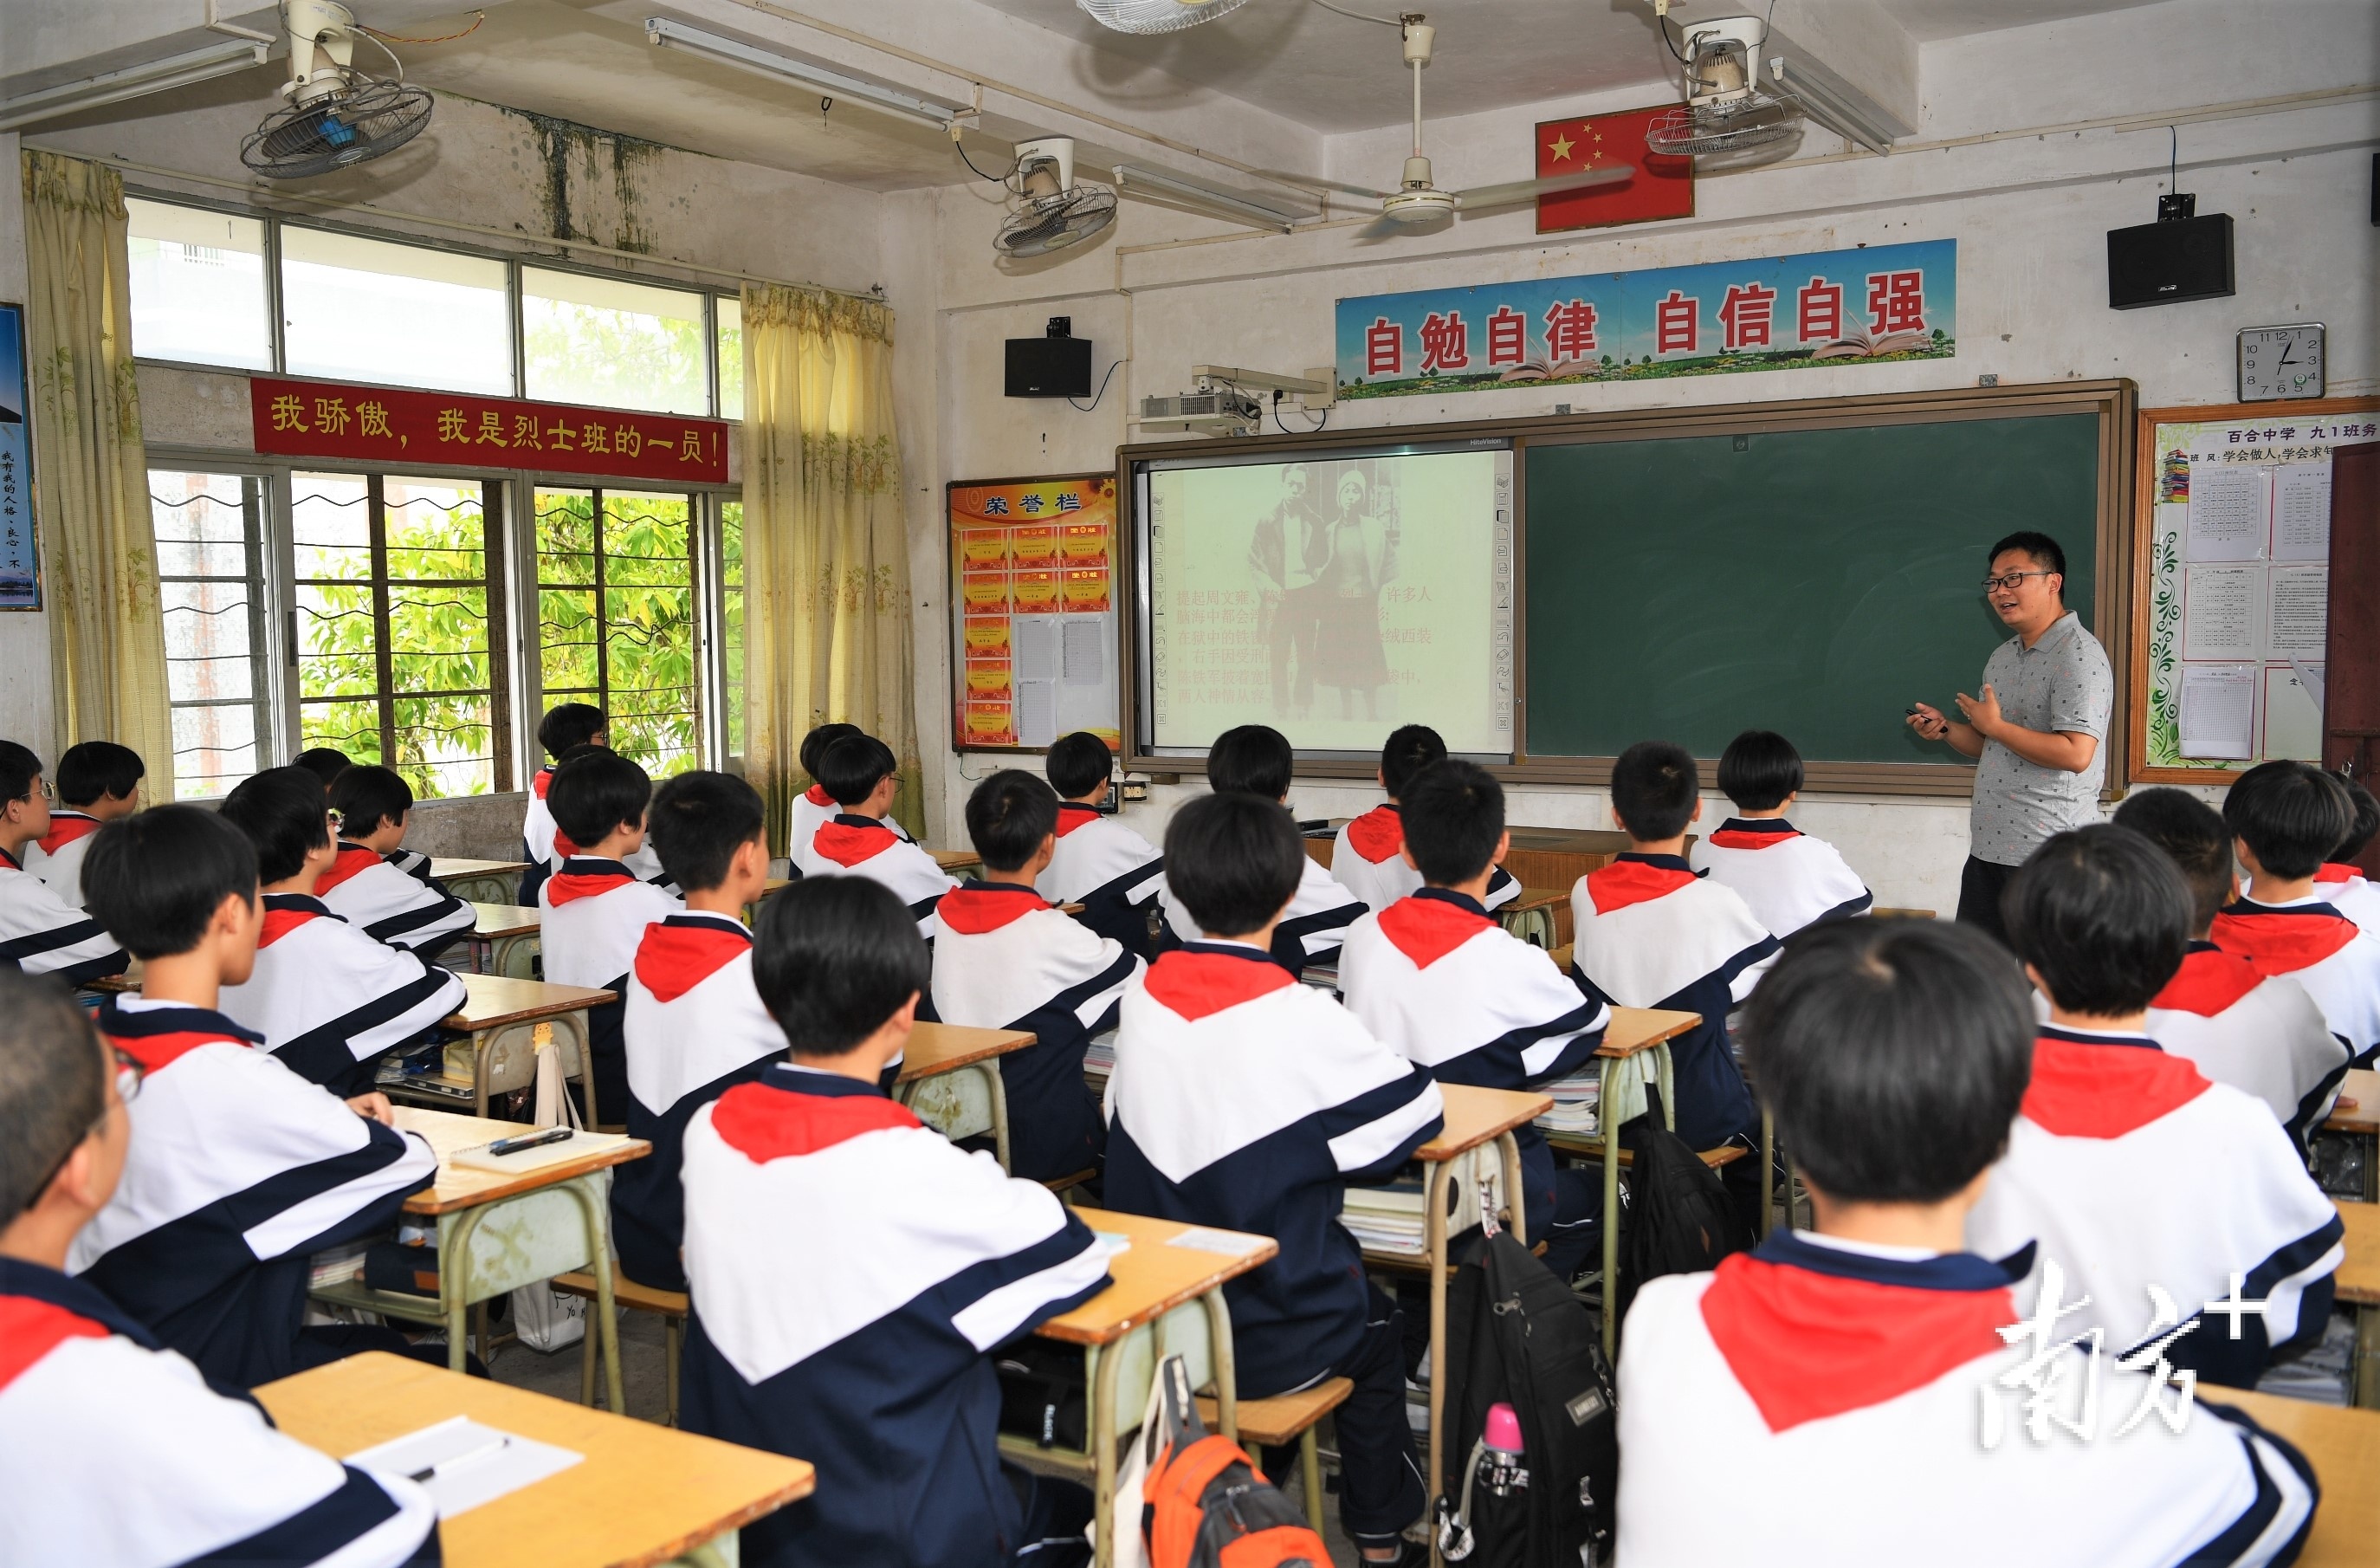 2011年6月，教育部授予开平市百合初级中学一个班为“周文雍陈铁军”班，并延续至今。杨兴乐摄